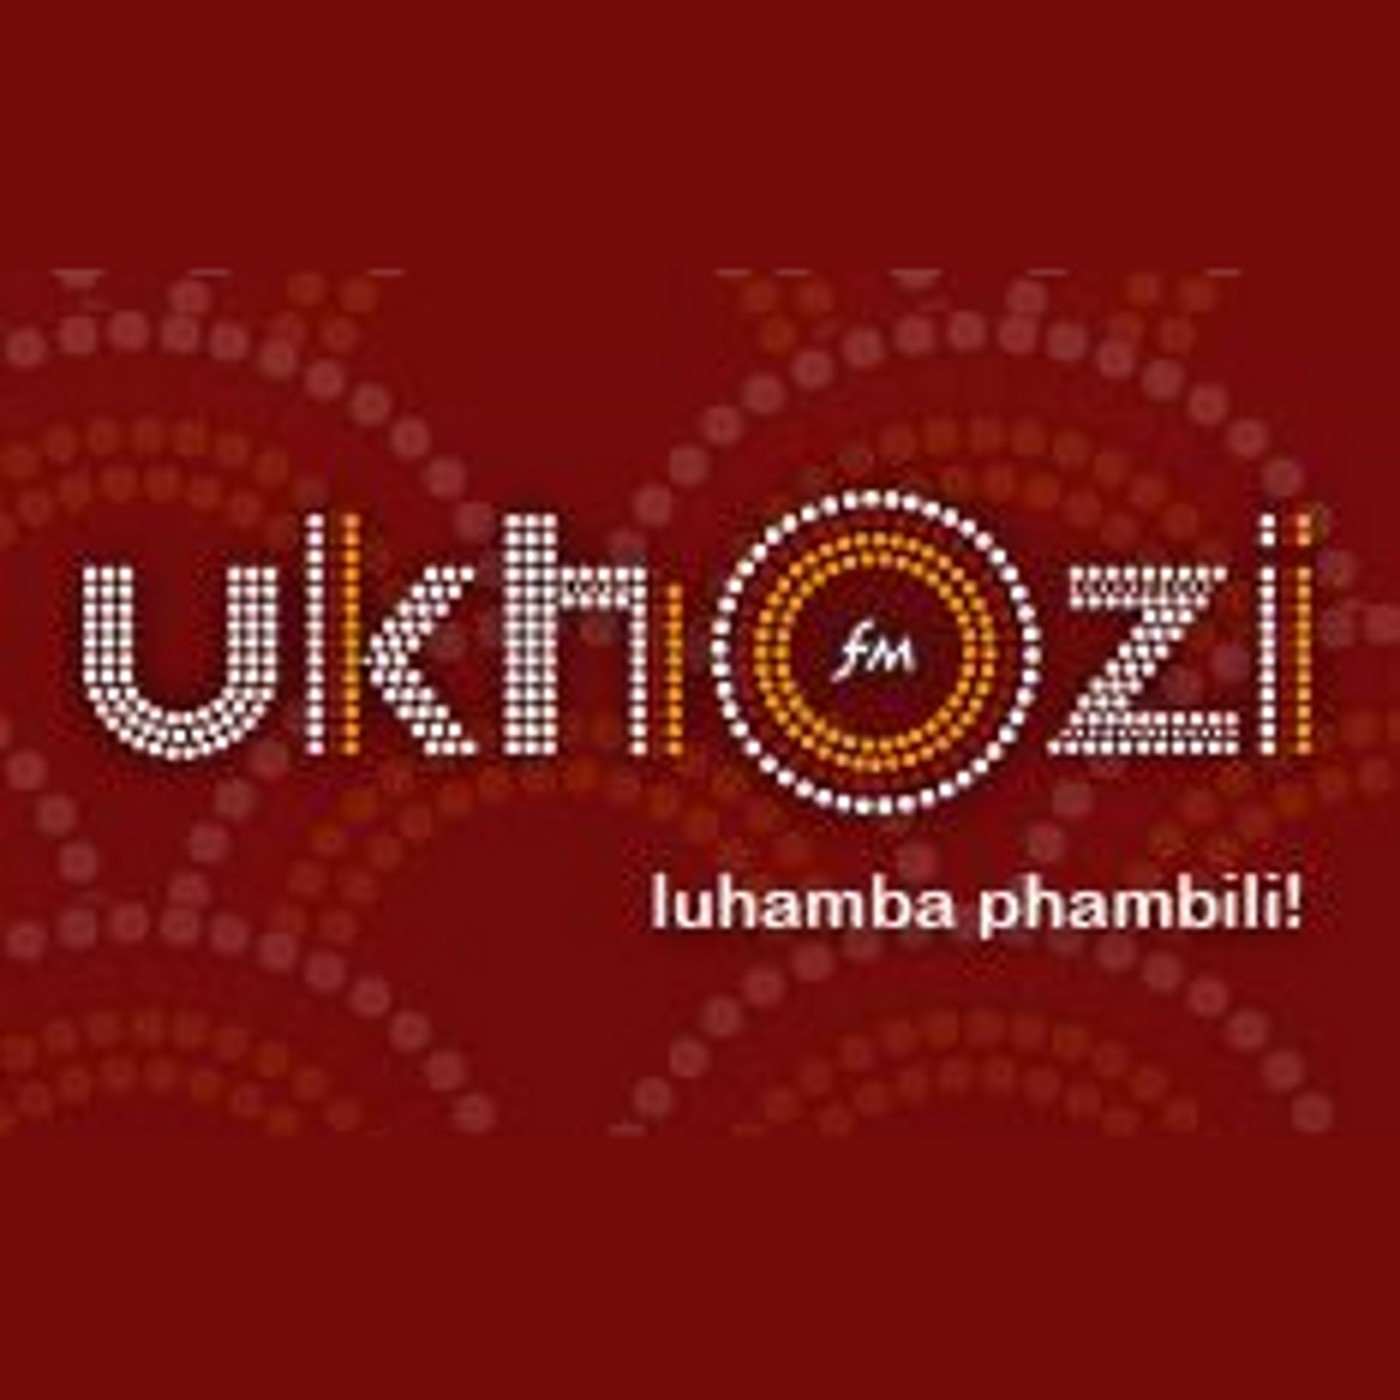 Khuthazeka no Sthembiso Zondo_Khula ndoda